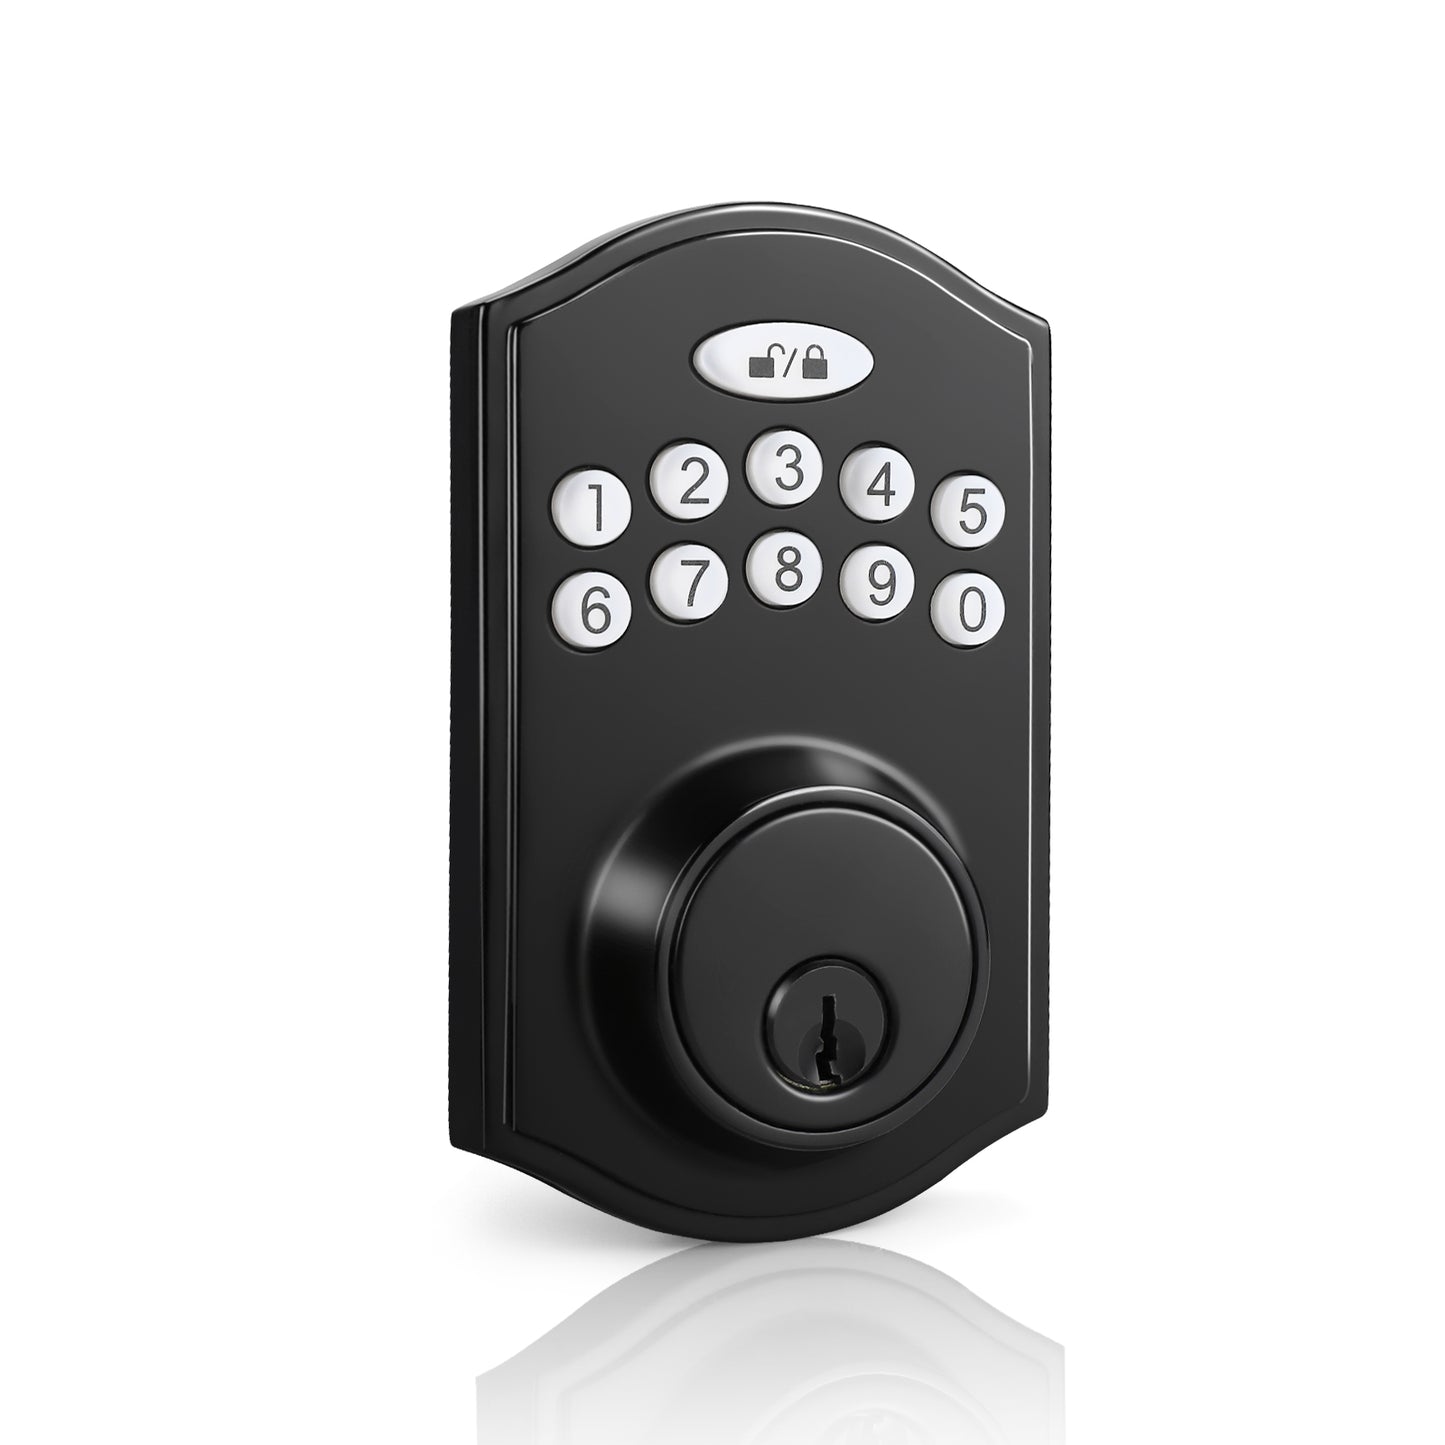 Tinewa Electronic Digital Keypad Deadbolt, Black Round Smart Deadbolt Lock, Entry Door Lock with Keypad, Front Door Lock with Keys, Auto Lock DLDS802BK